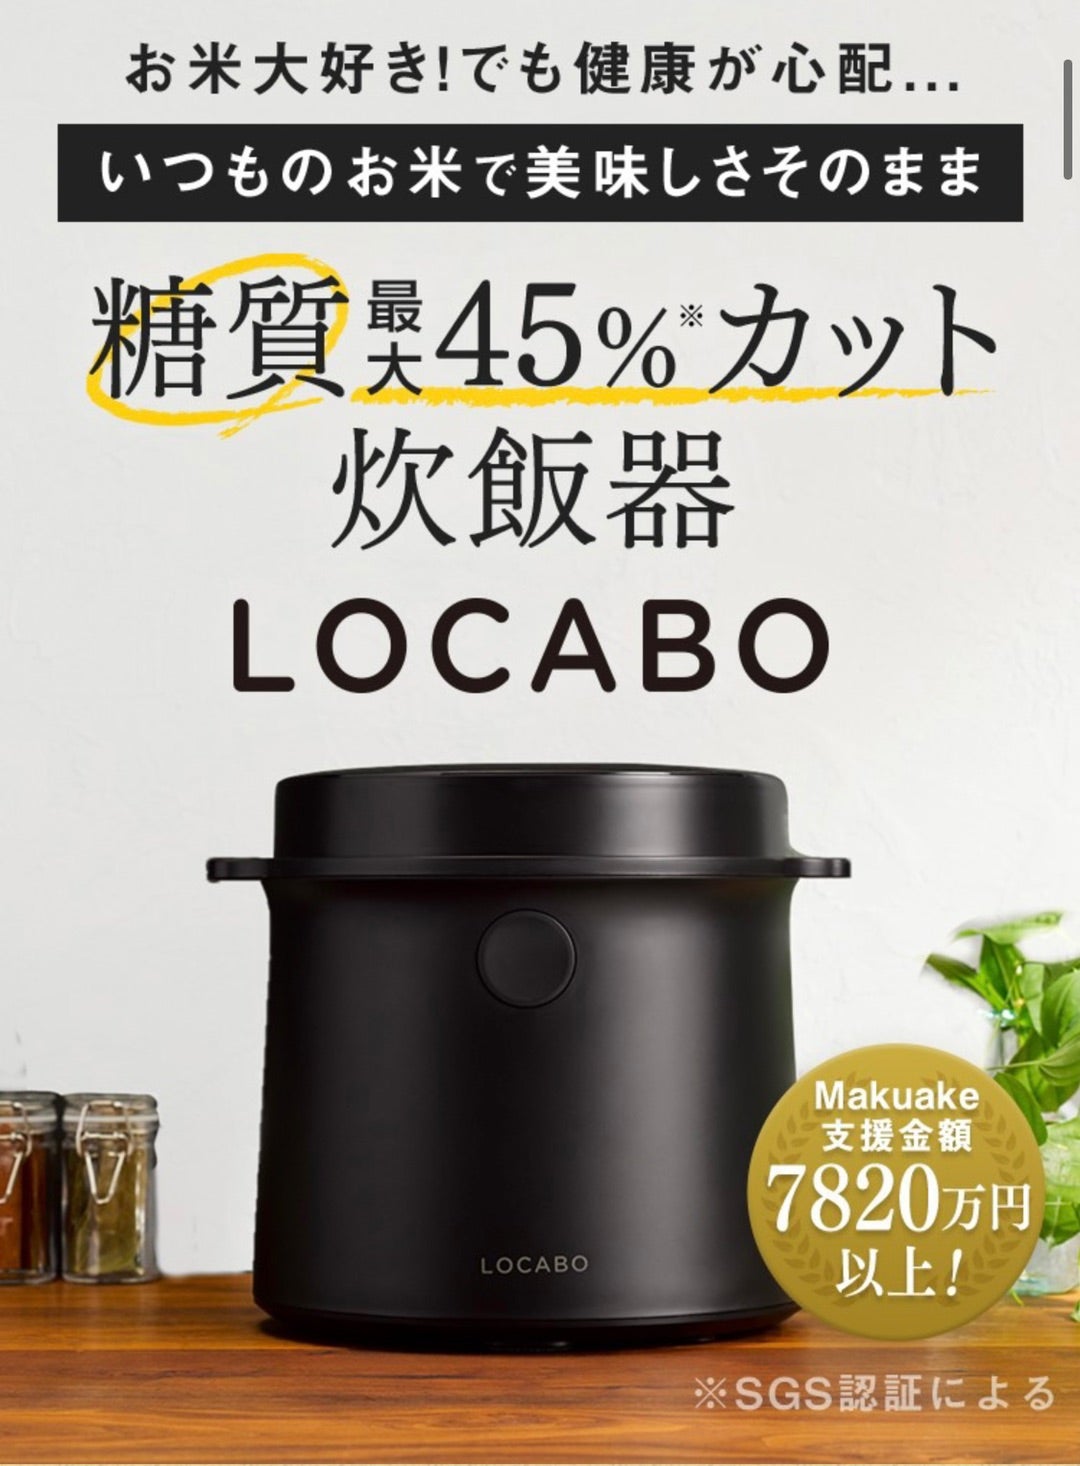 糖質カット炊飯器LOCABO | ストレッチクリニック ブログ